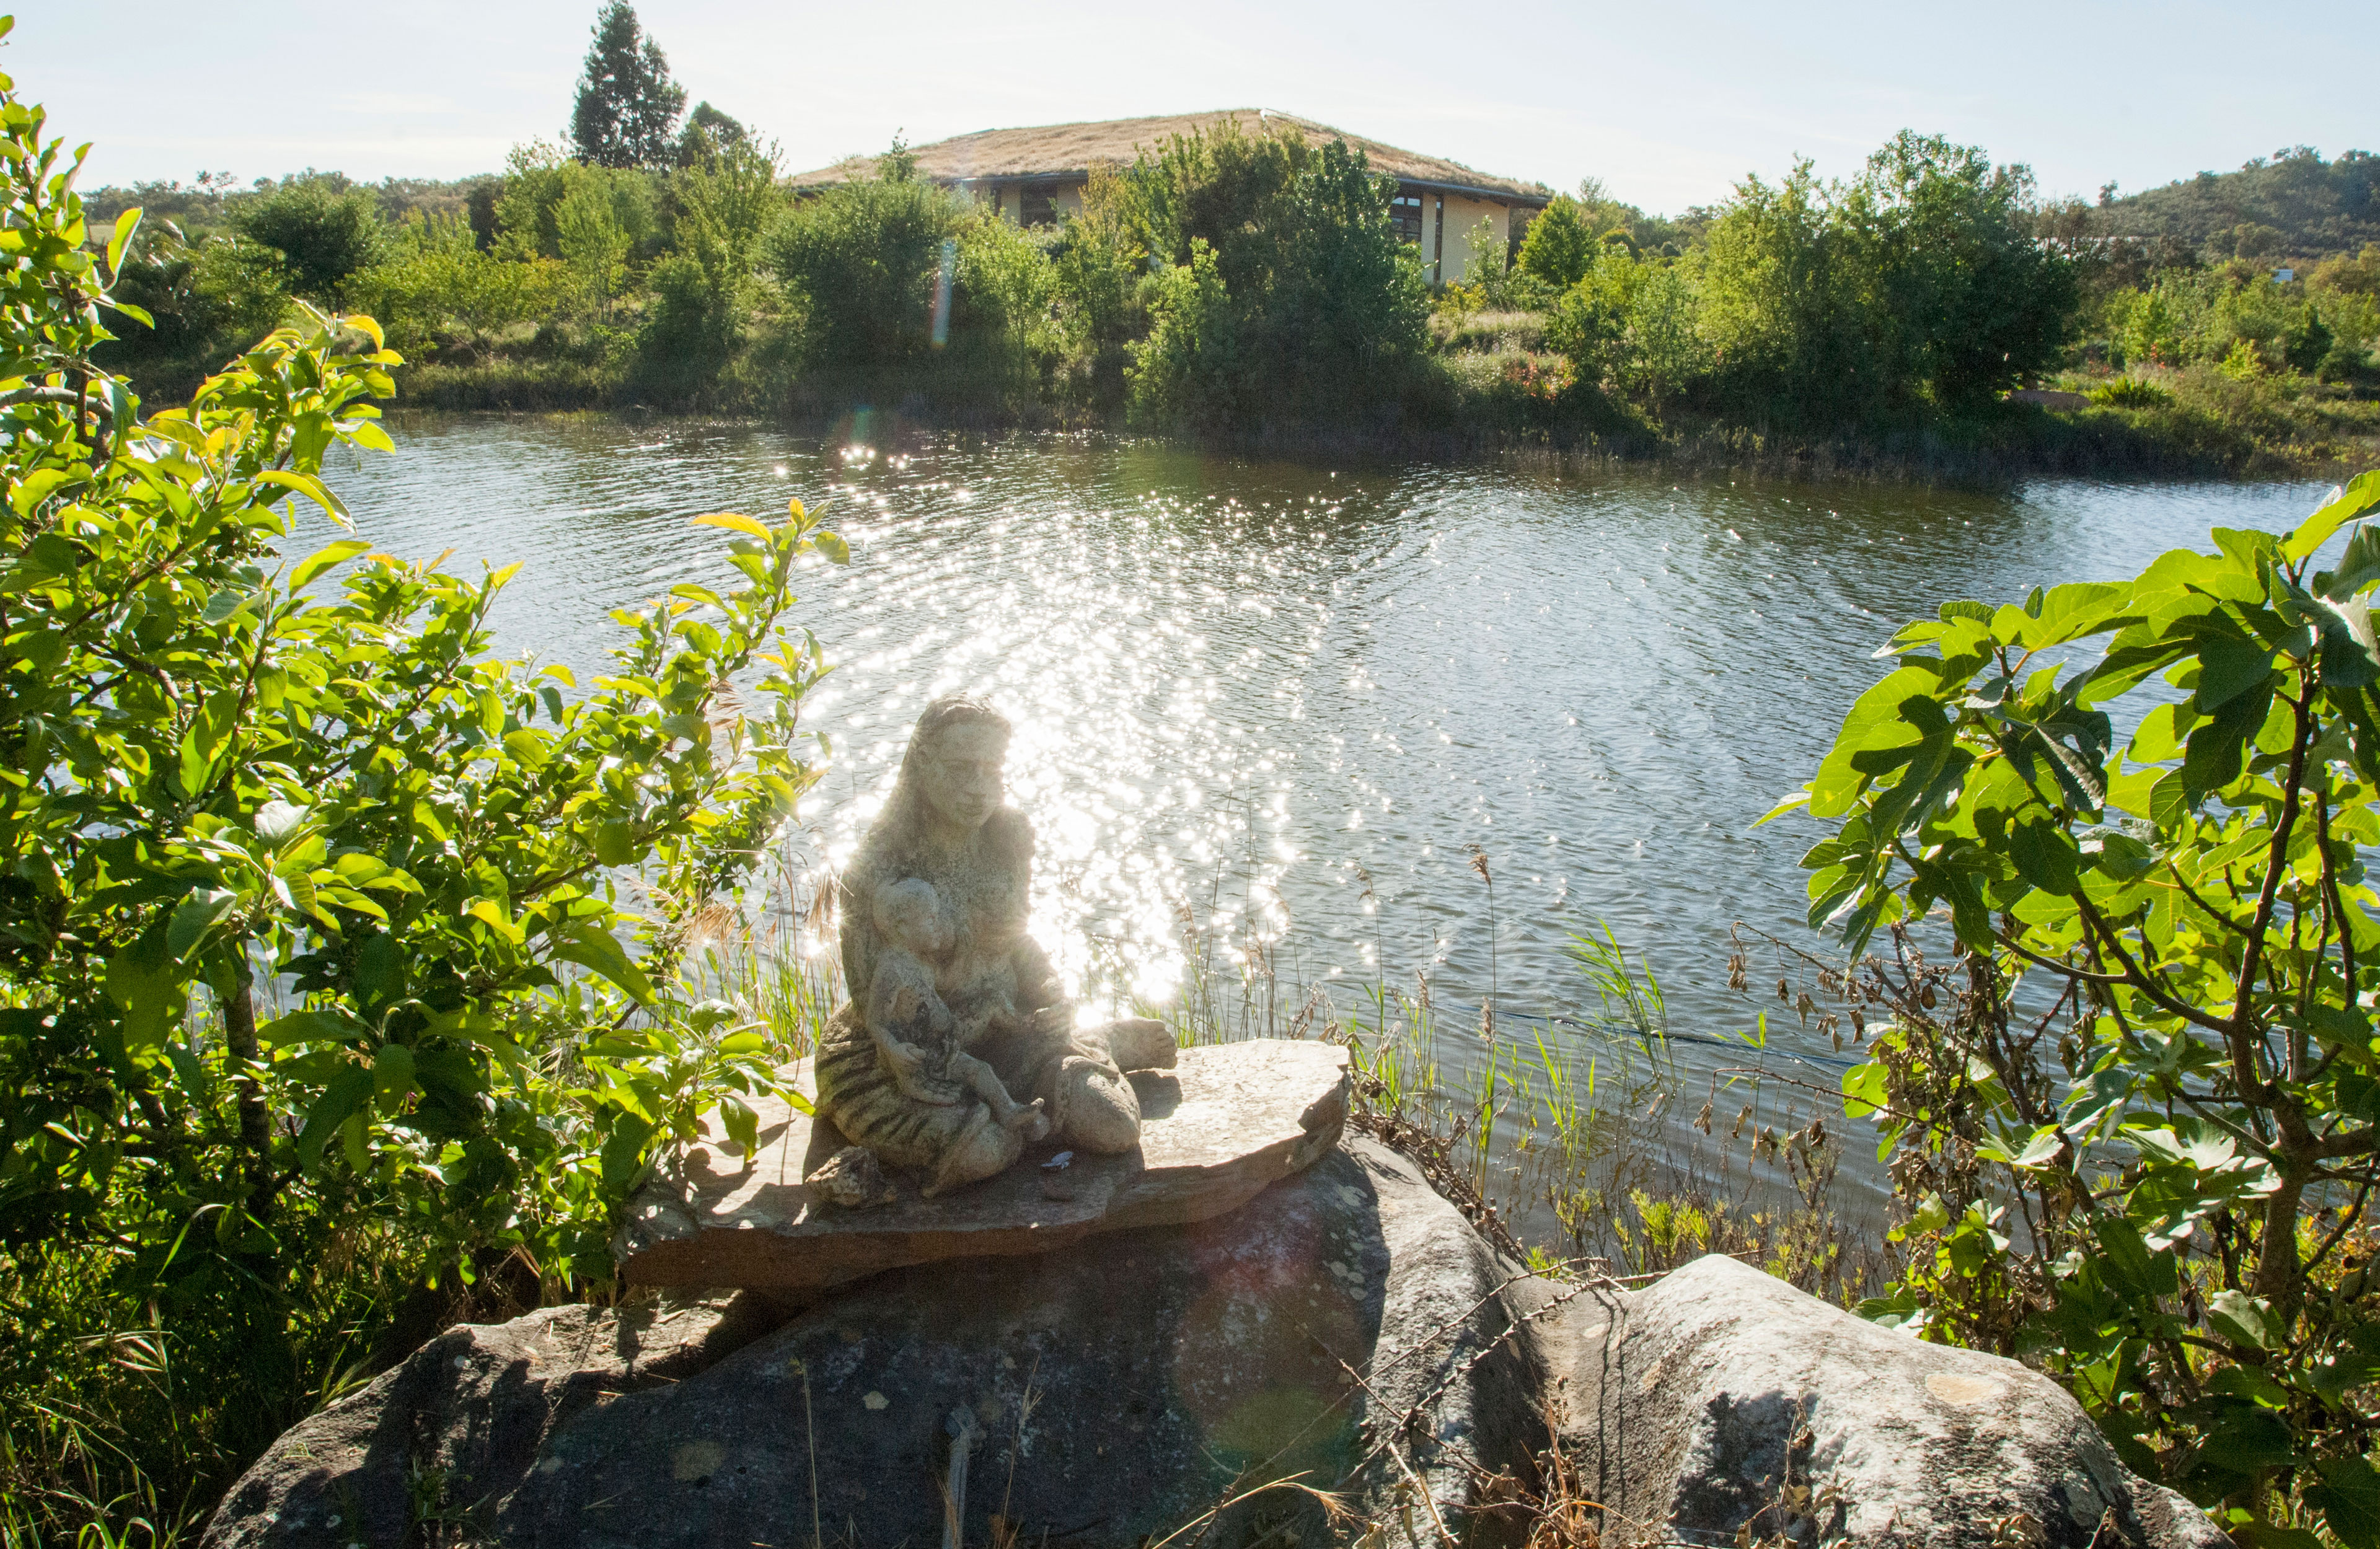 Goddess Sculpture at the Lake